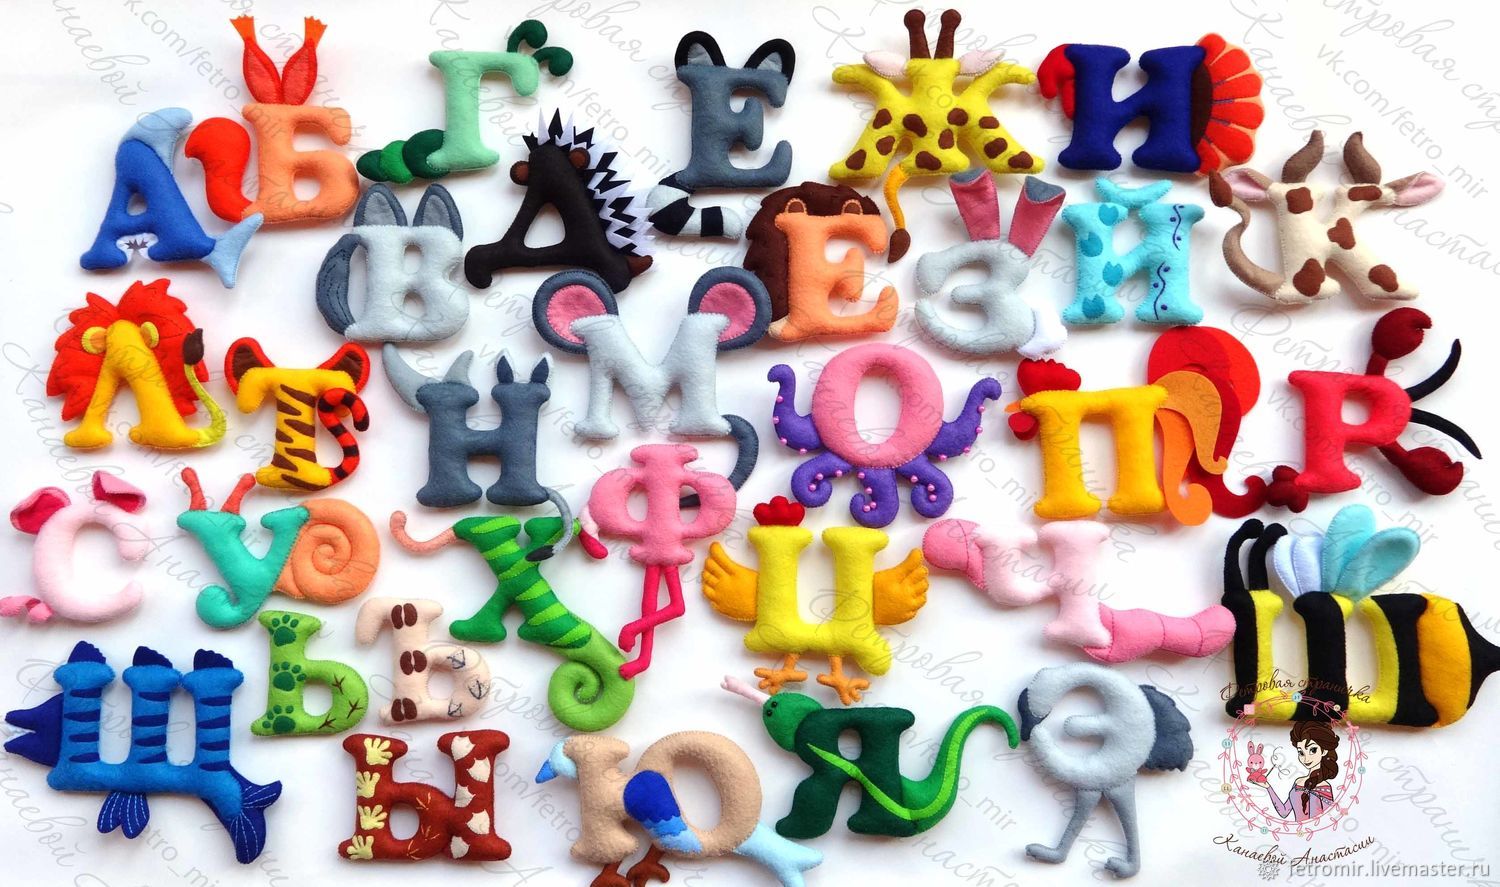 Купить буквы азбуки. Буквы алфавита из фетра. Поделка Азбука. Пластилиновые буквы. Фетровый алфавит с игрушками.